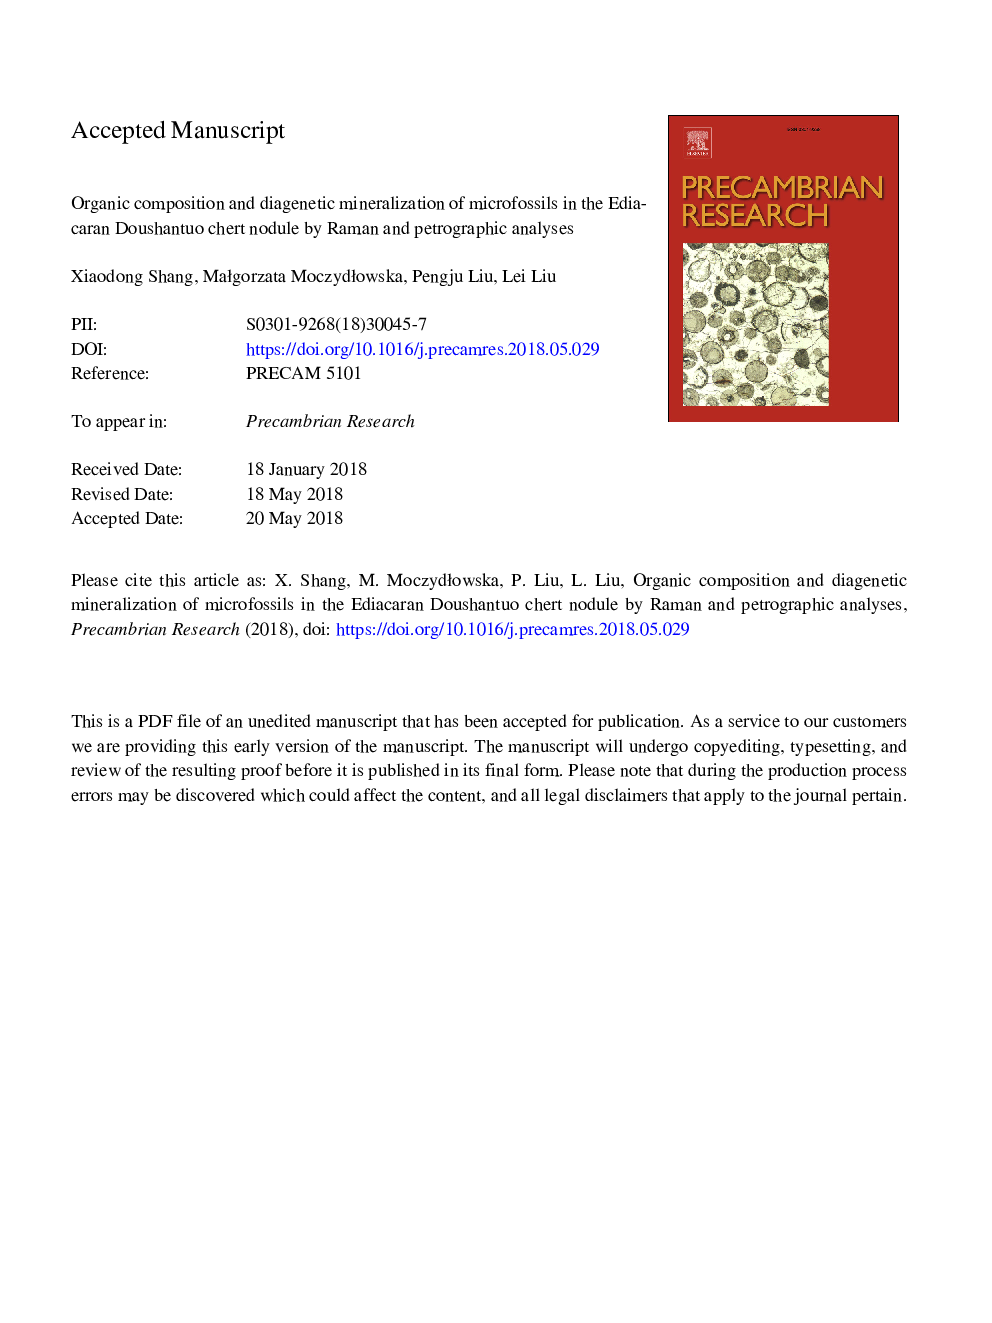 ترکیب ارگانیک و کانه زایی دیگنتیک میکروفوسل های در گرید ادیاکار دوشنتو چرت توسط رامان و تجزیه و تحلیل پتروگرافی